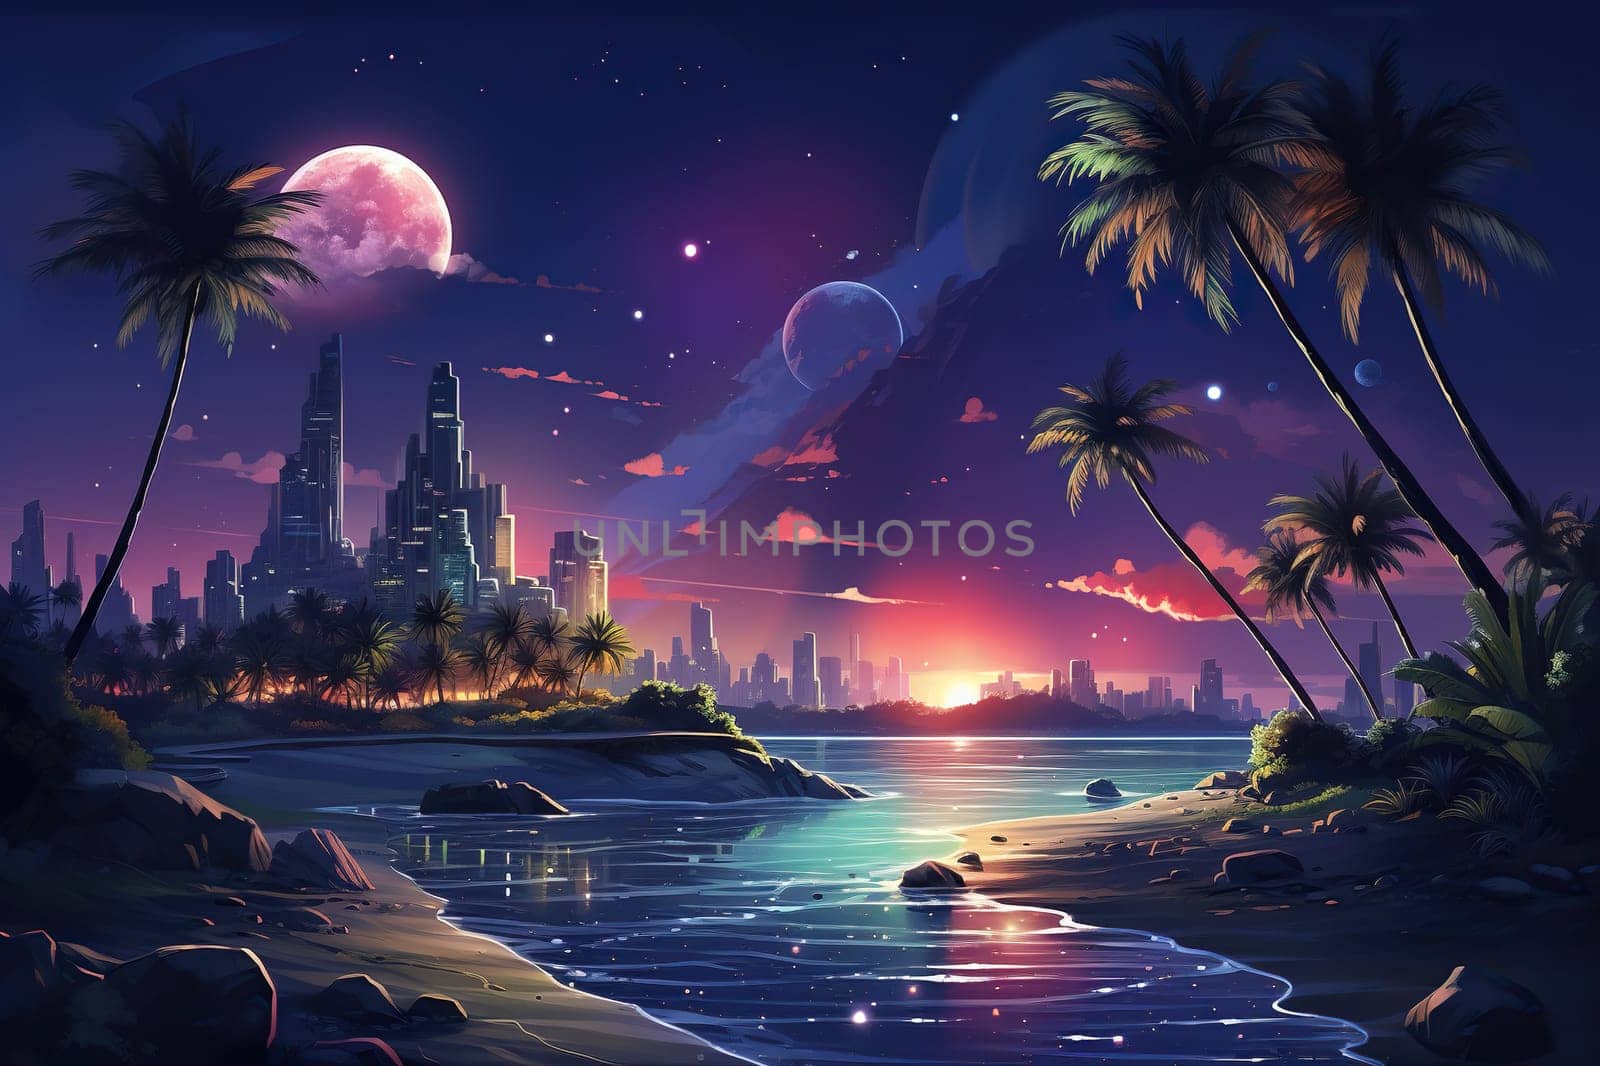 Retro Futuristic landscape with sea, palm trees and skyscrapers.